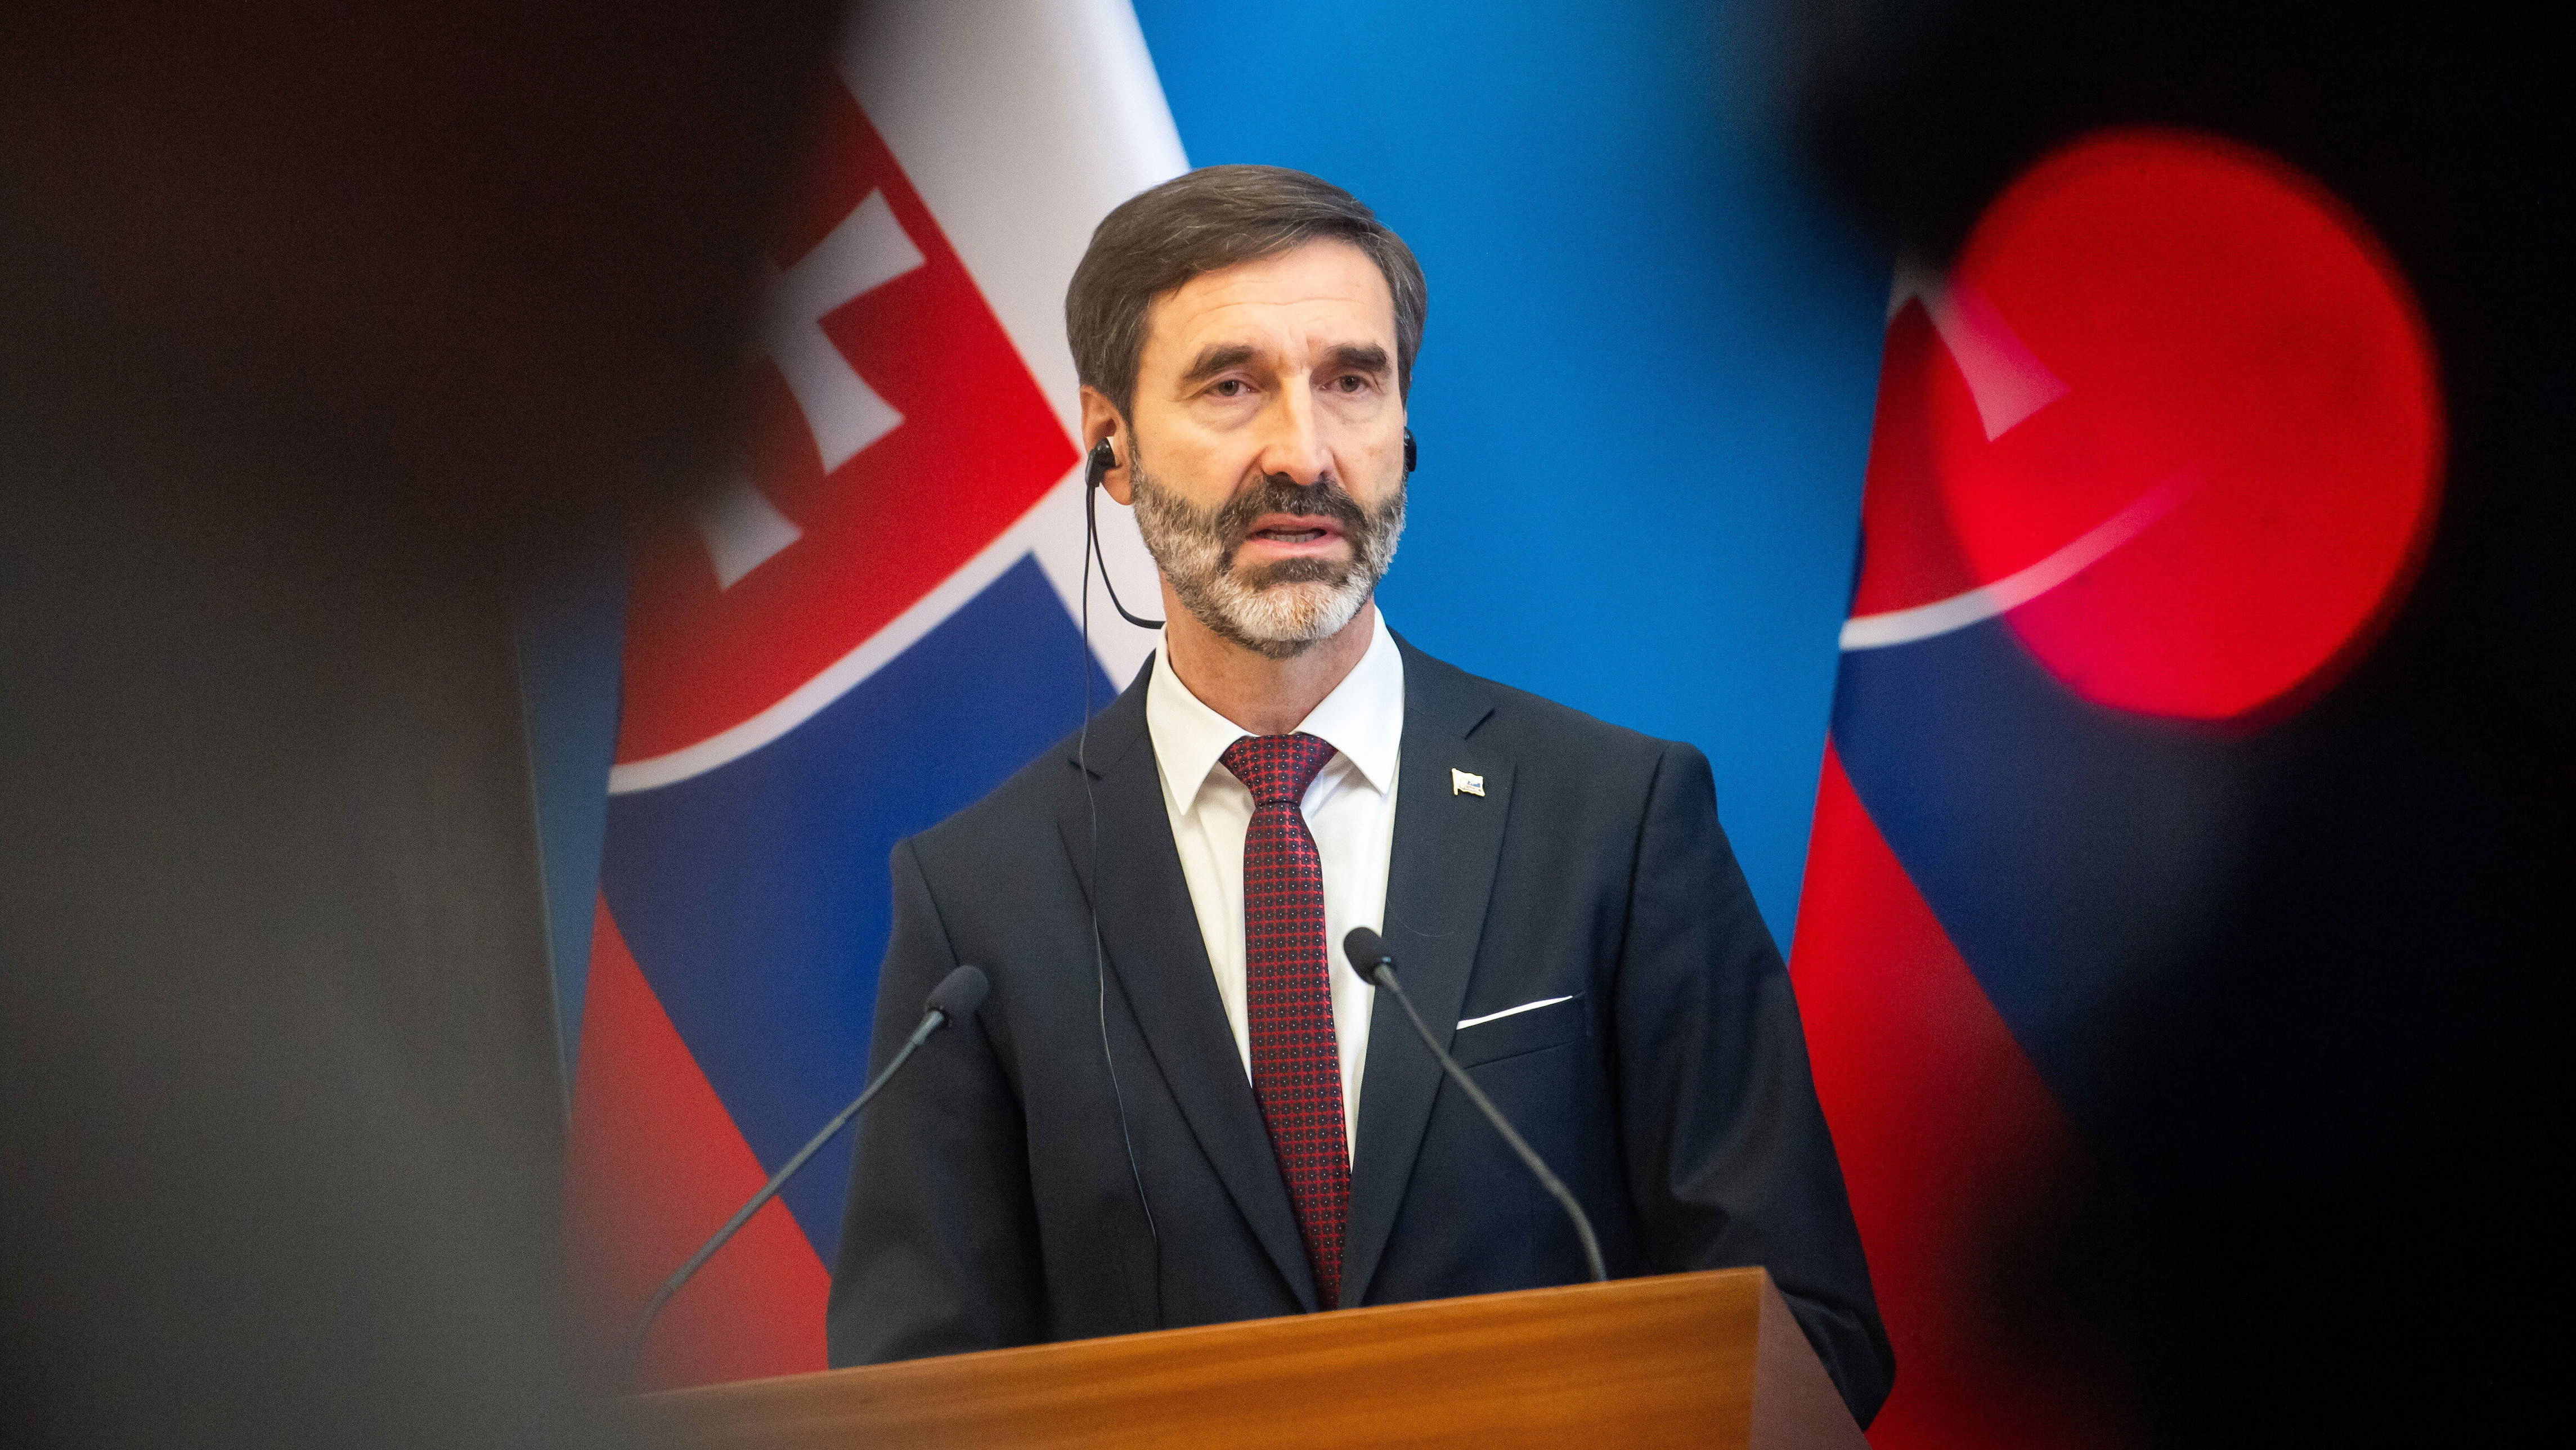 słowacki minister spotkał się z siergiejem ławrowem. przekazał jasny komunikat